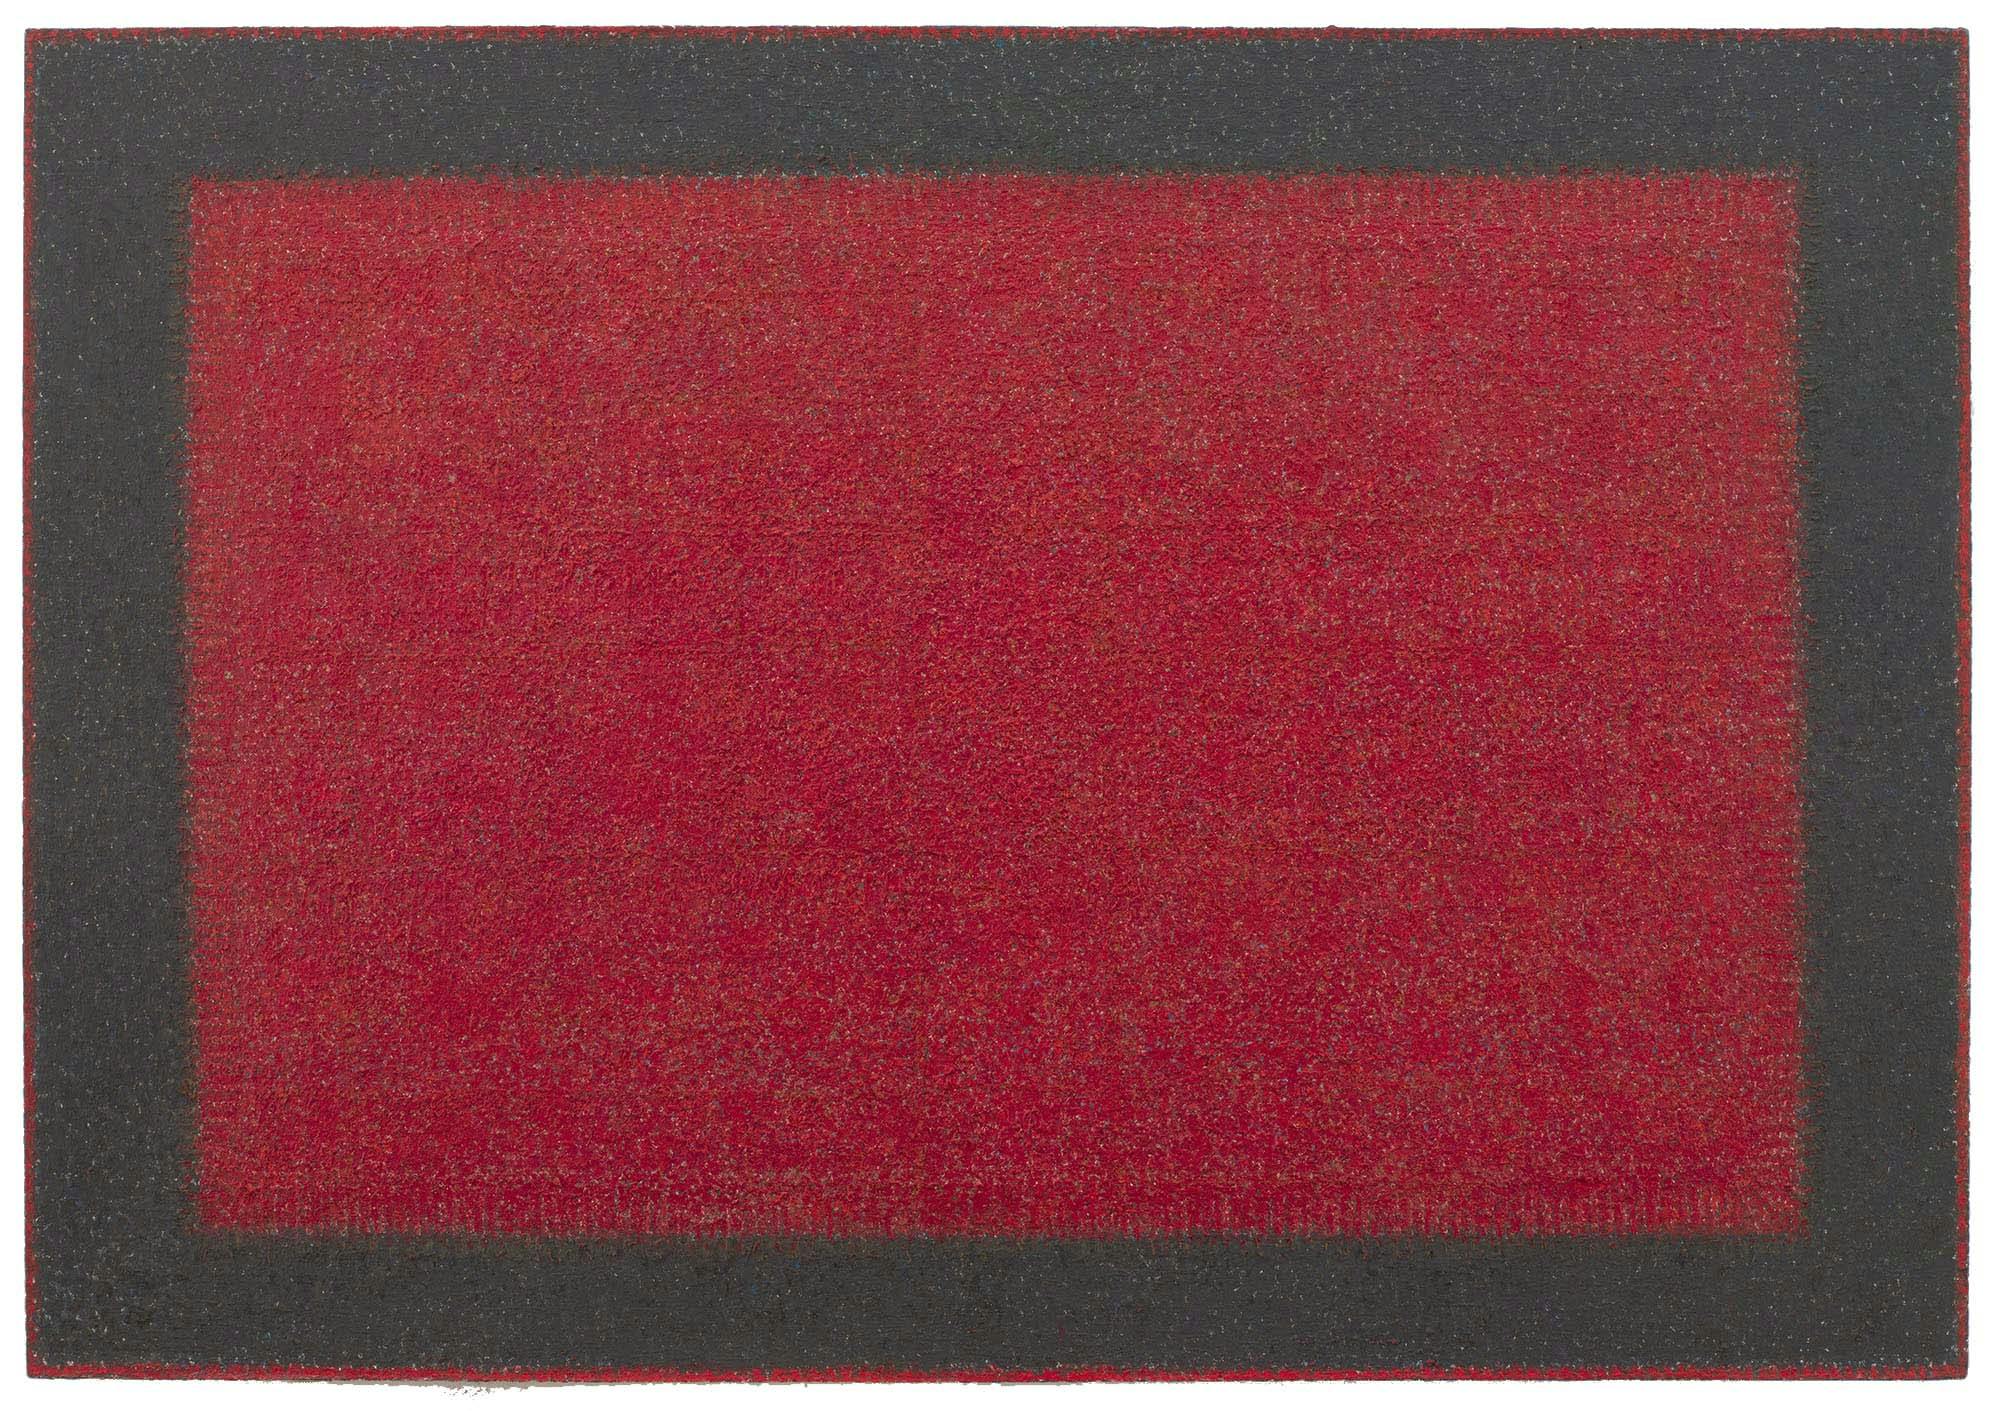 Transcendental Red
1982
Oil on linen
50 x 72 in. (127 x 182.9 cm)
 – The Richard Pousette-Dart Foundation